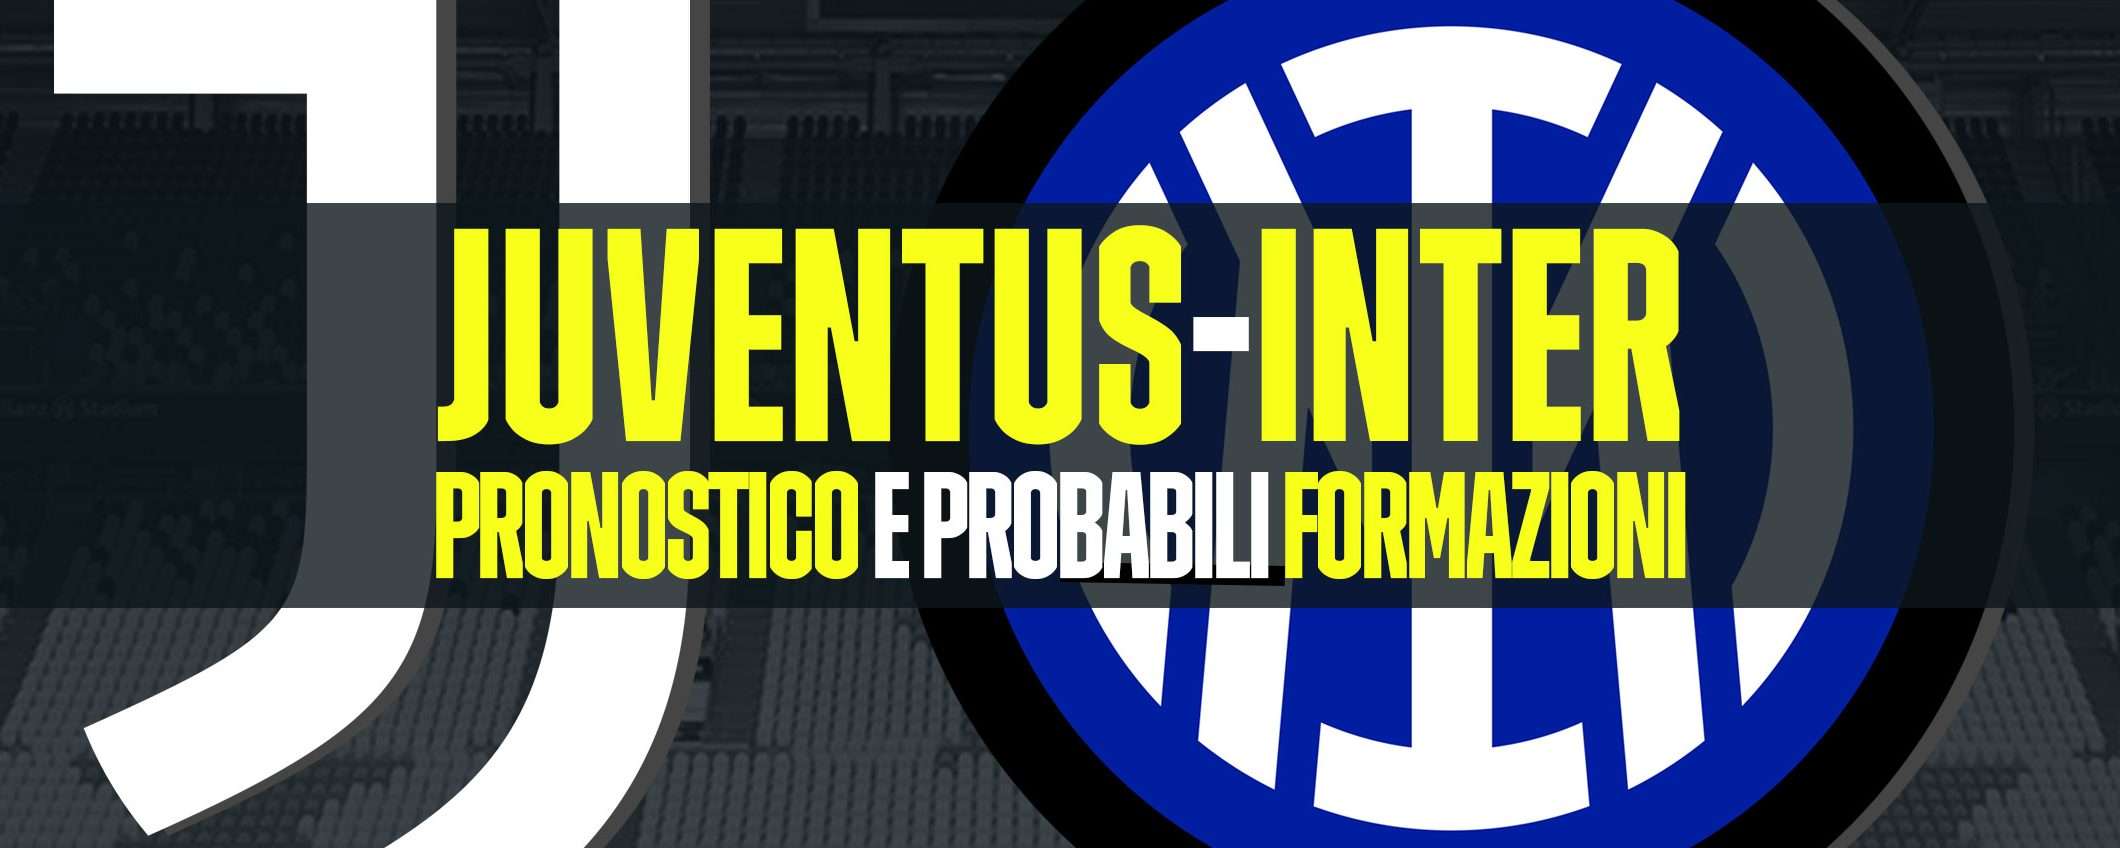 Juventus-Inter: pronostico e probabili formazioni